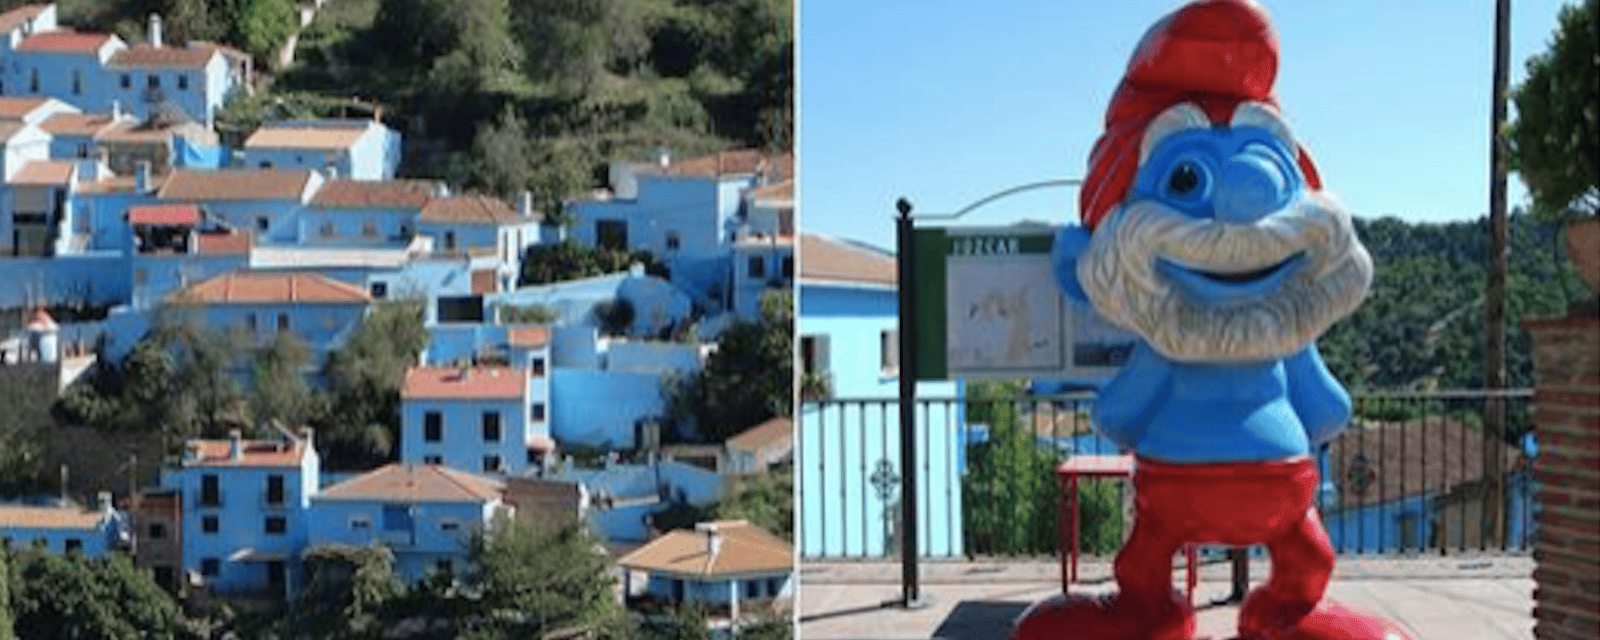 Le vrai village des Schtroumpfs se situe en Espagne